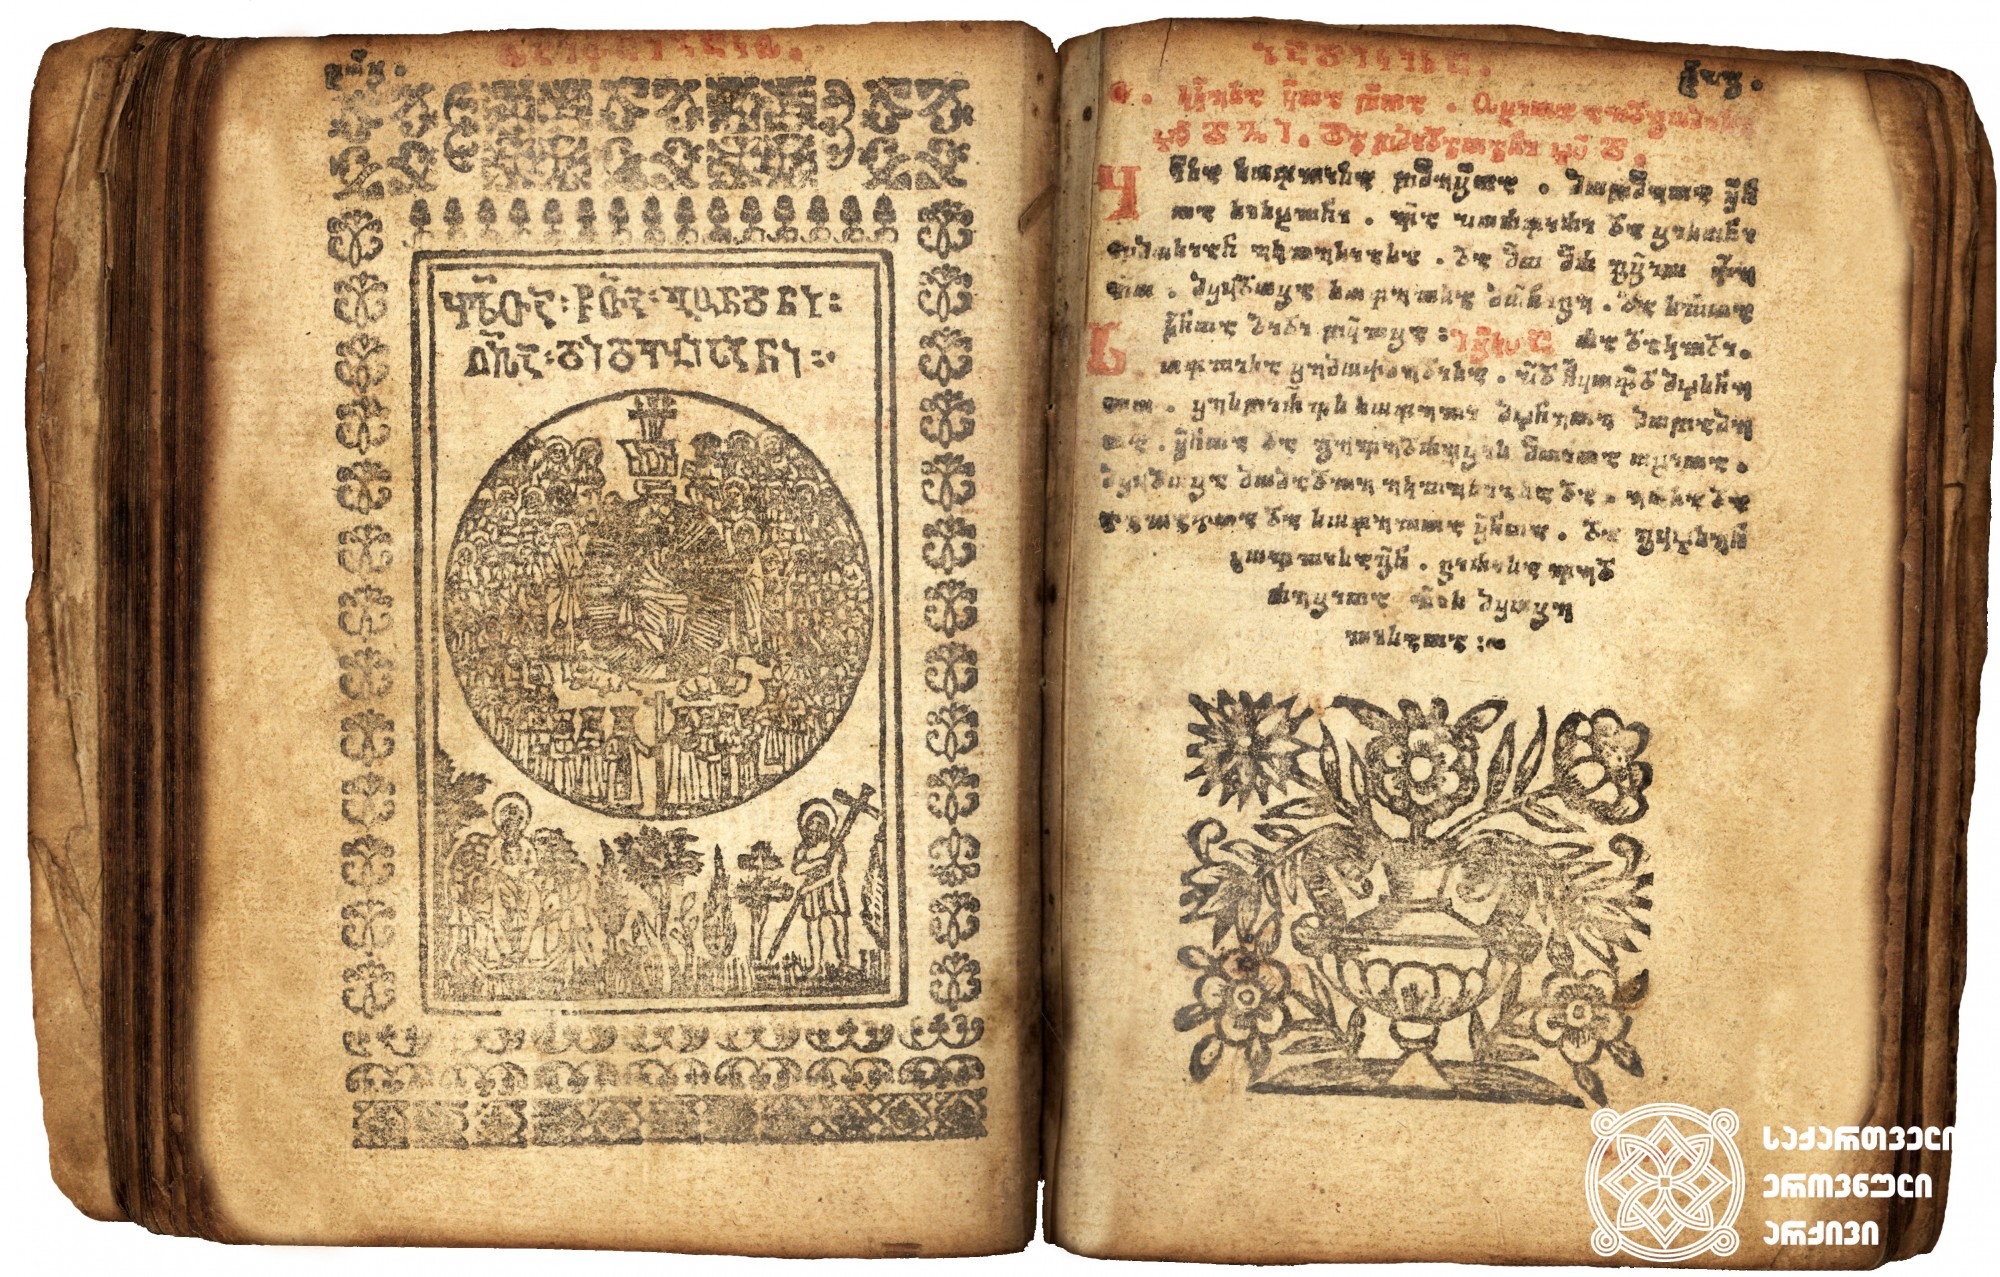 „ყოველთა წმიდათა გუნდნი ღმრთისა დიდებისანი“ <br>
ჟამნი  <br>
ტფილისი, 1717  <br>
ვახტანგ VI-ის სტამბა <br>
მესტამბე: მიხაილ სტეფანეს ძე უნგროვლახელი <br>

Horologion  <br>
Tfilisi, 1717 <br>
Printing house of Vakhtang VI <br>
Printer: Mihai Ungrovlakheli <br>